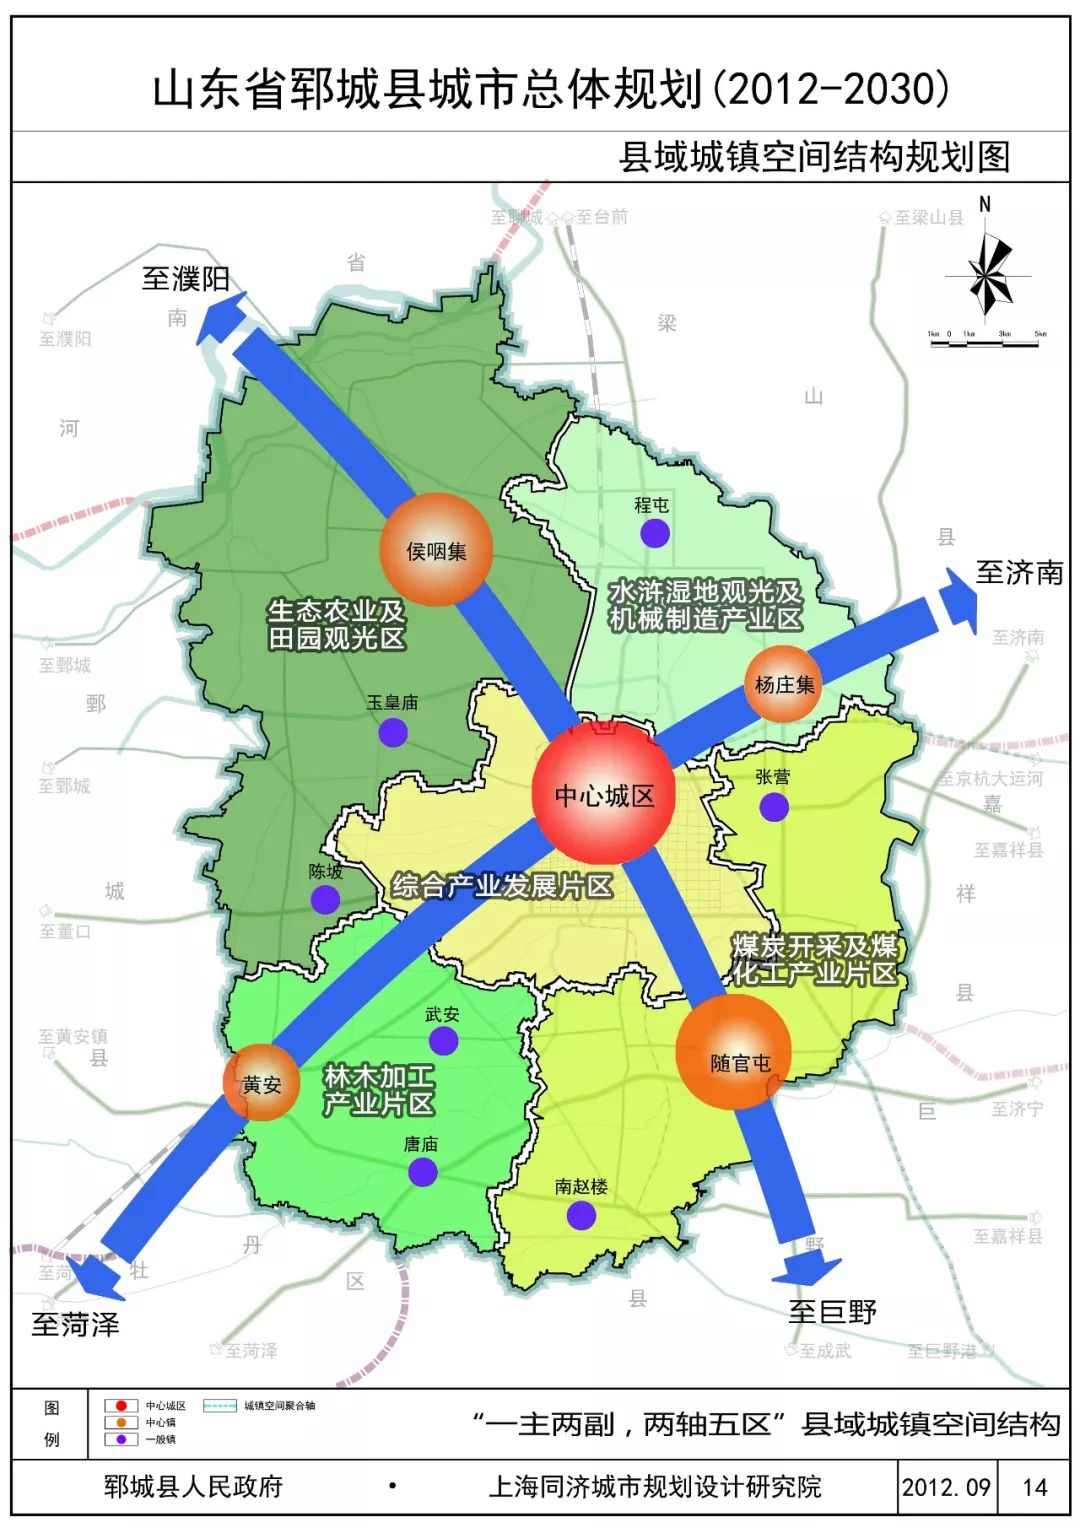 菏泽郓城20122030年城市总体规划